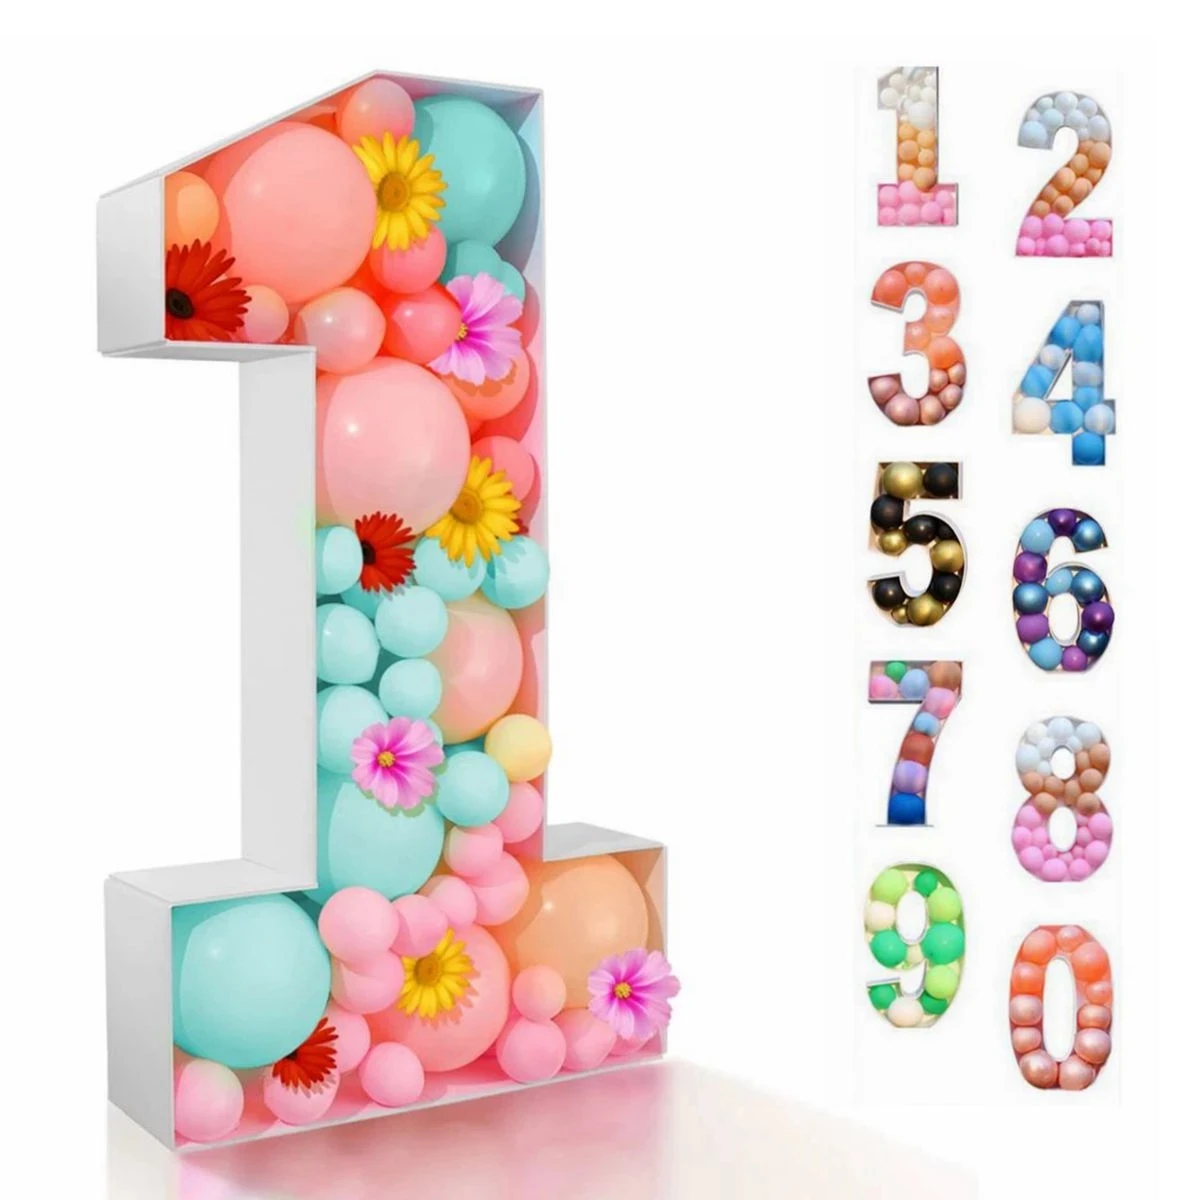 

73/93 см гигантская фигурка на день рождения, надувной шар, воздушный шар, украшение на день рождения, на Baby Shower, Свадебный шар с цифрами, рамка, коробка